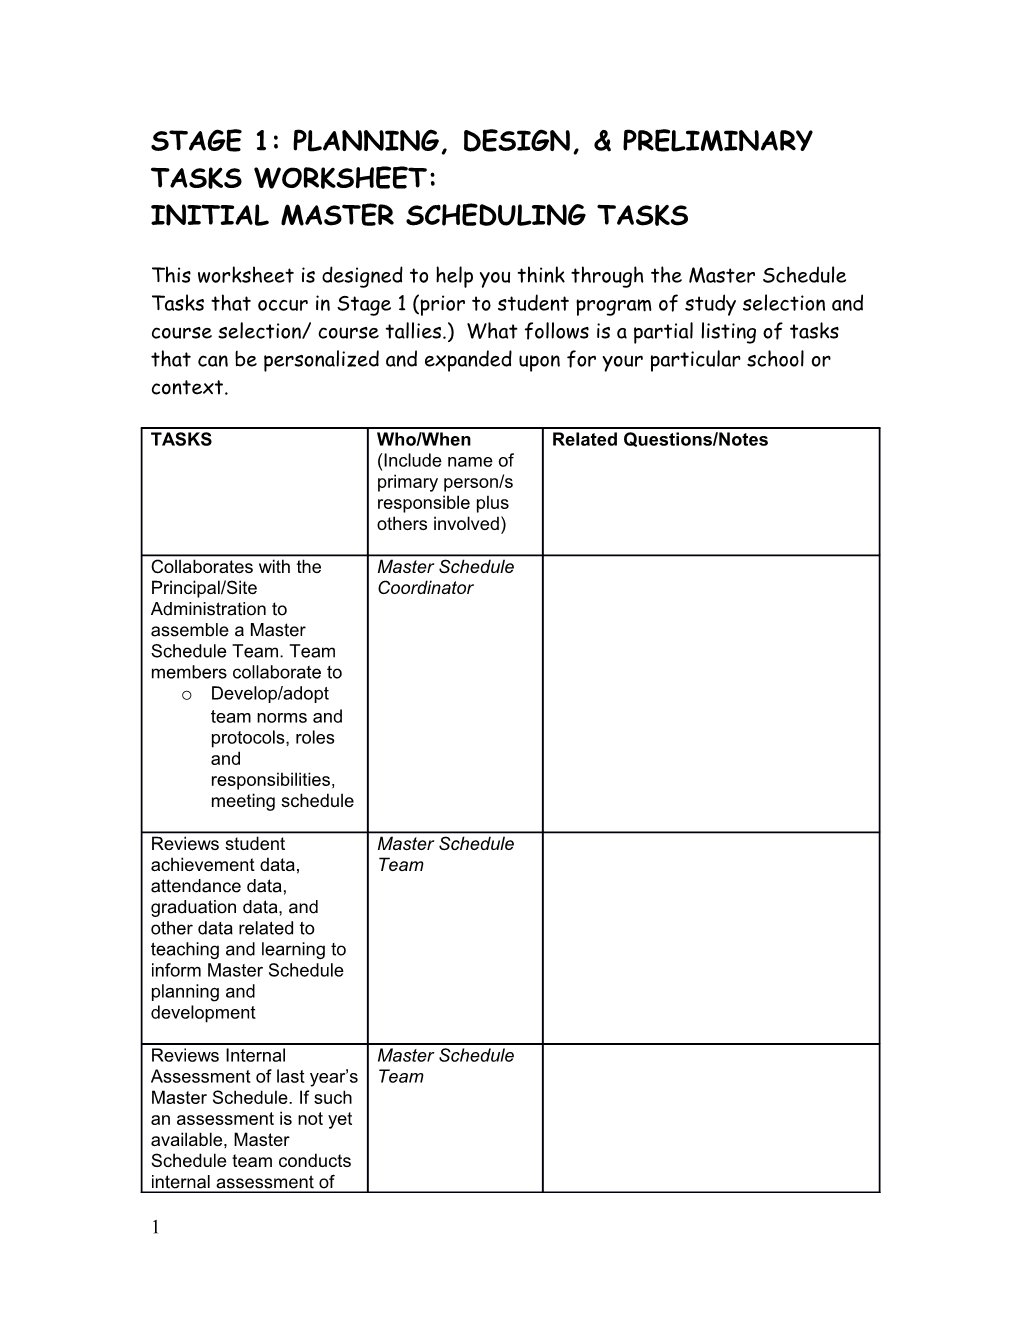 Stage 1: Planning, Design, & Preliminary Tasksworksheet